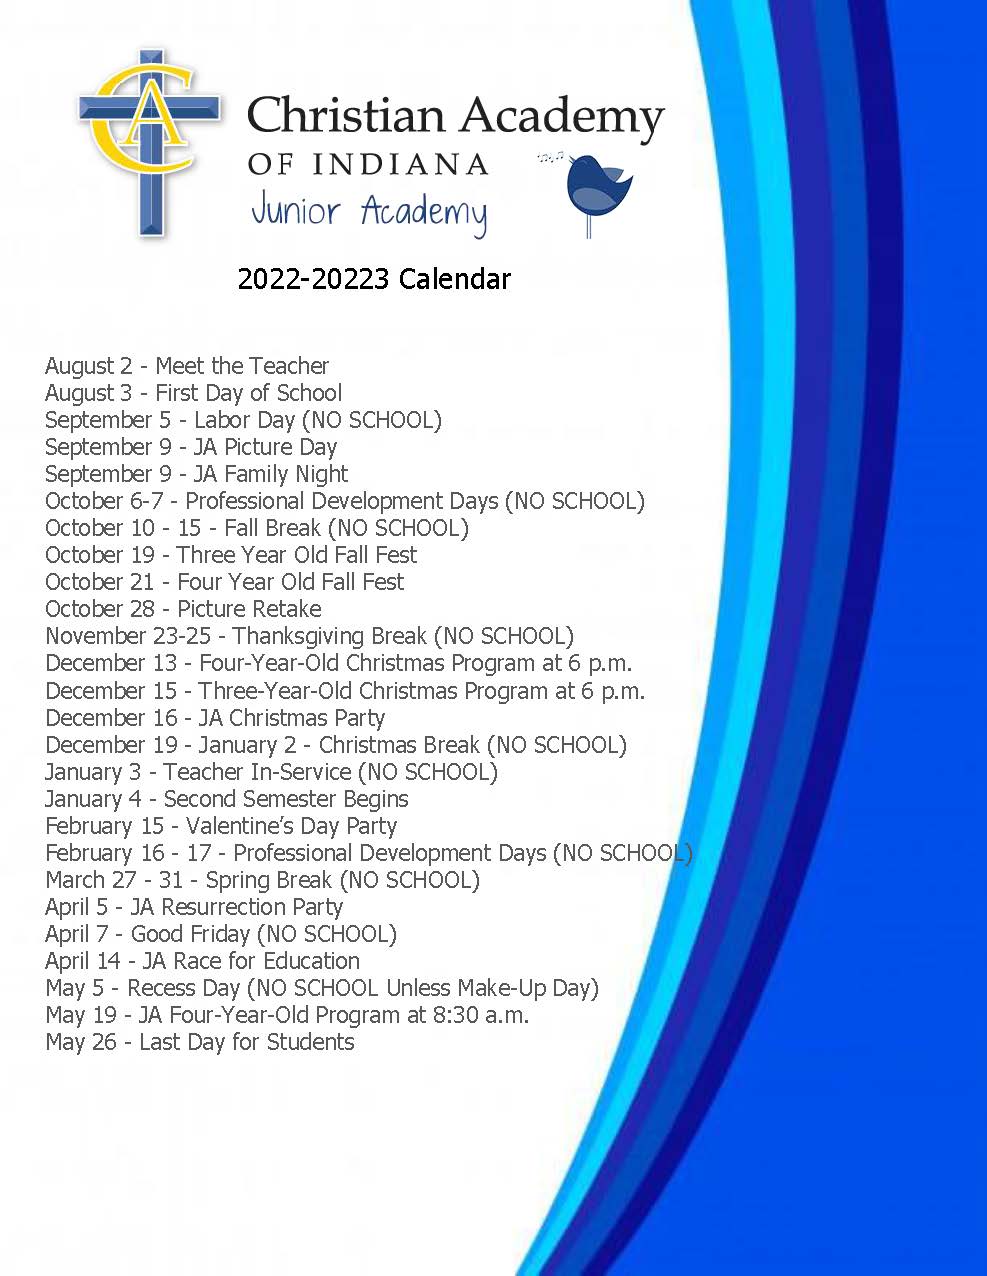 Christian Academy School System | Christian Academy of Indiana | Junior Academy | 2022-2023 Calendar